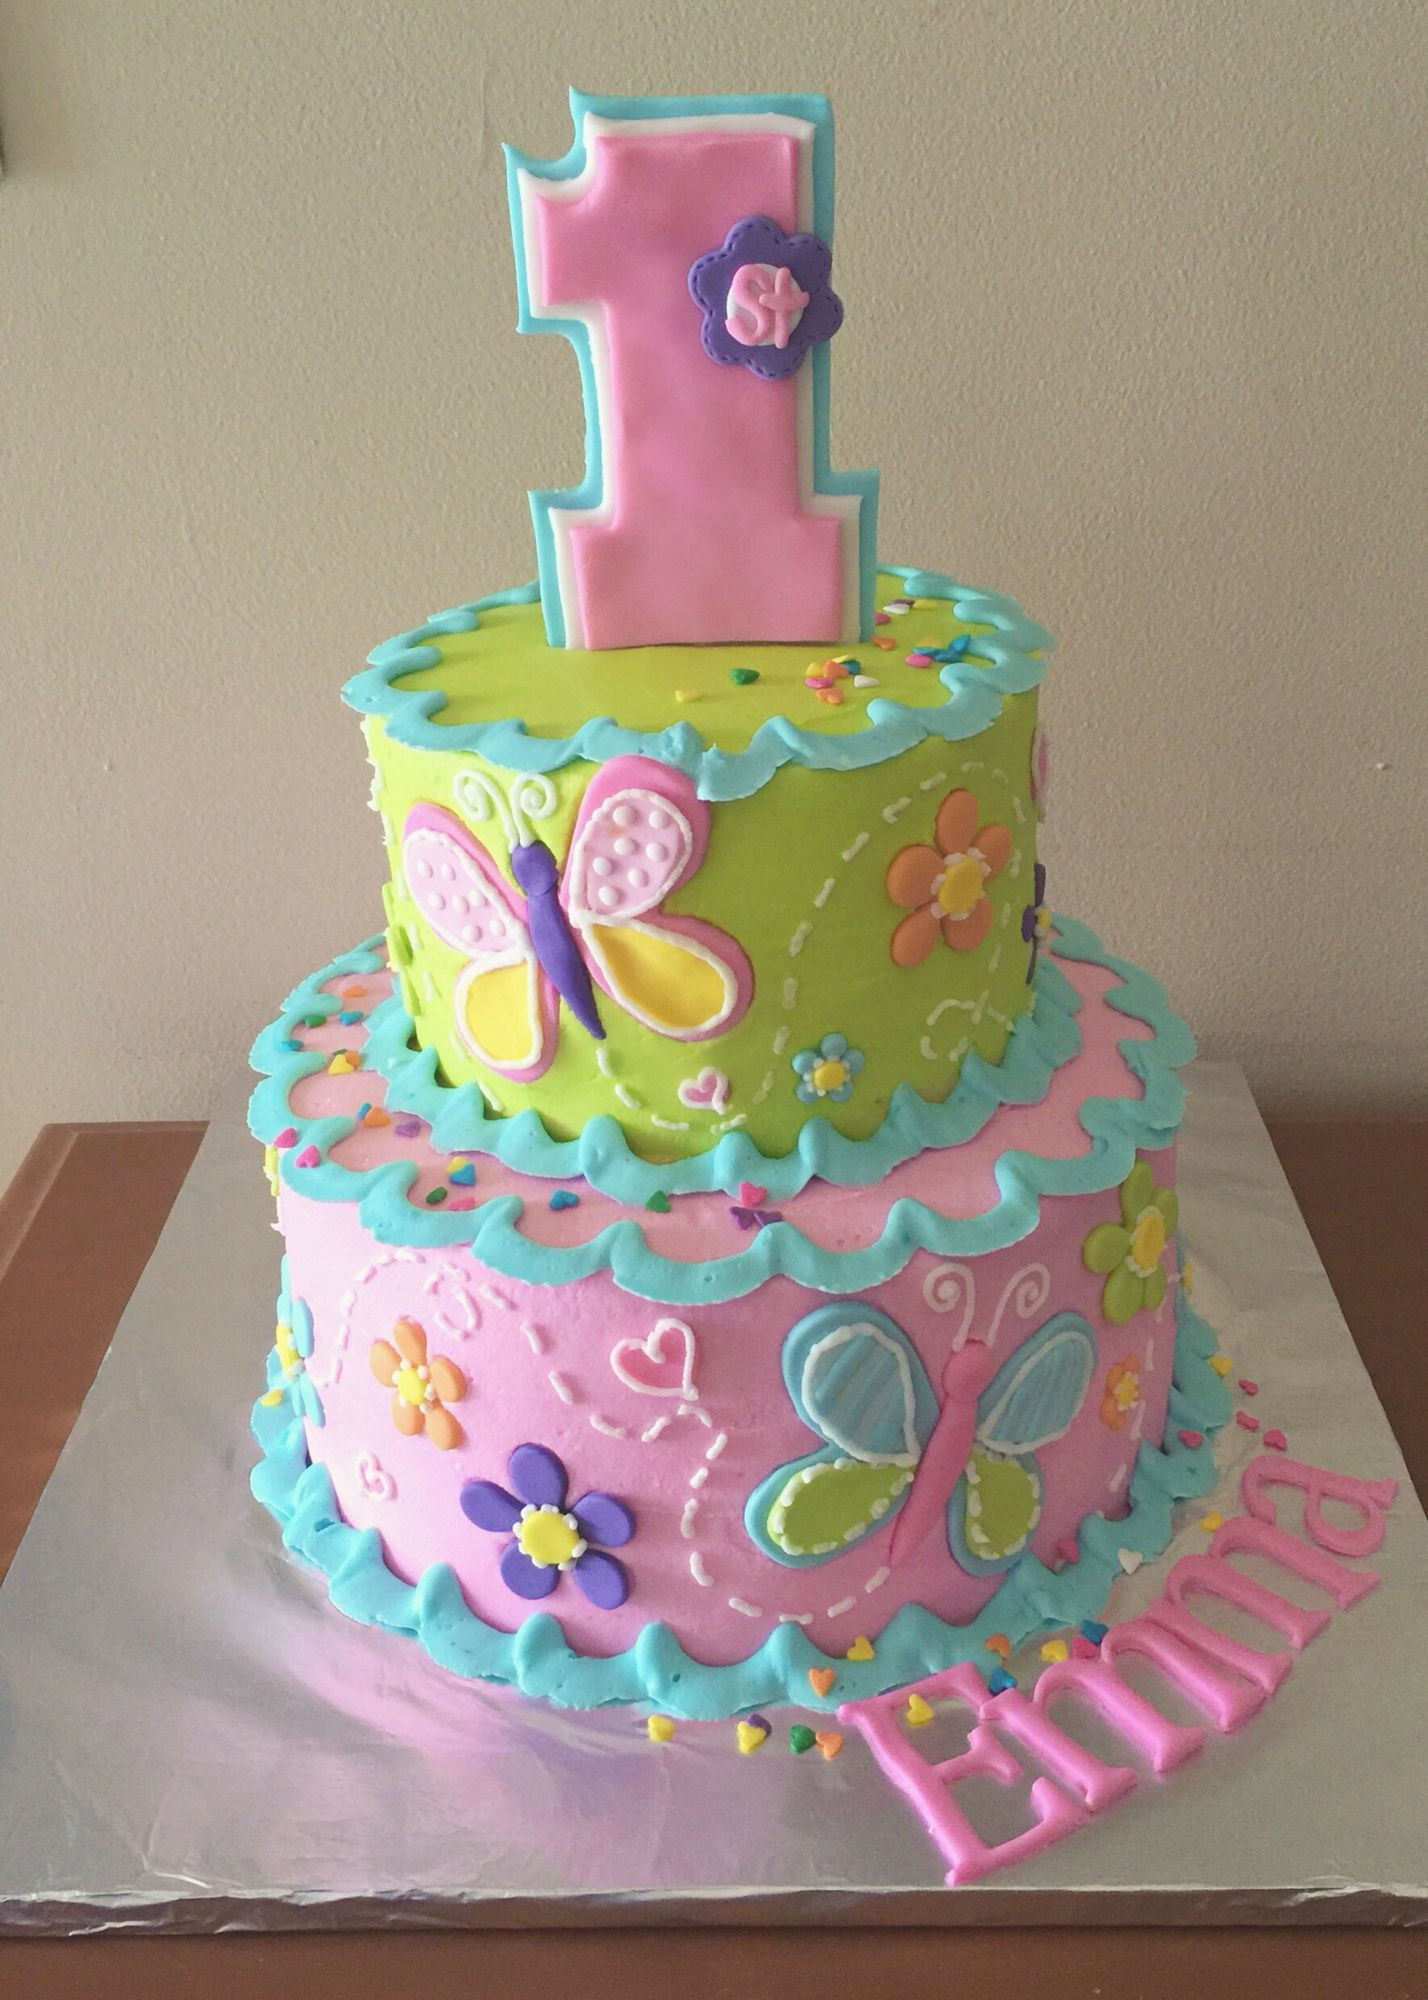 1st Birthday Cake For Girl
 1st birthday cake for a girl